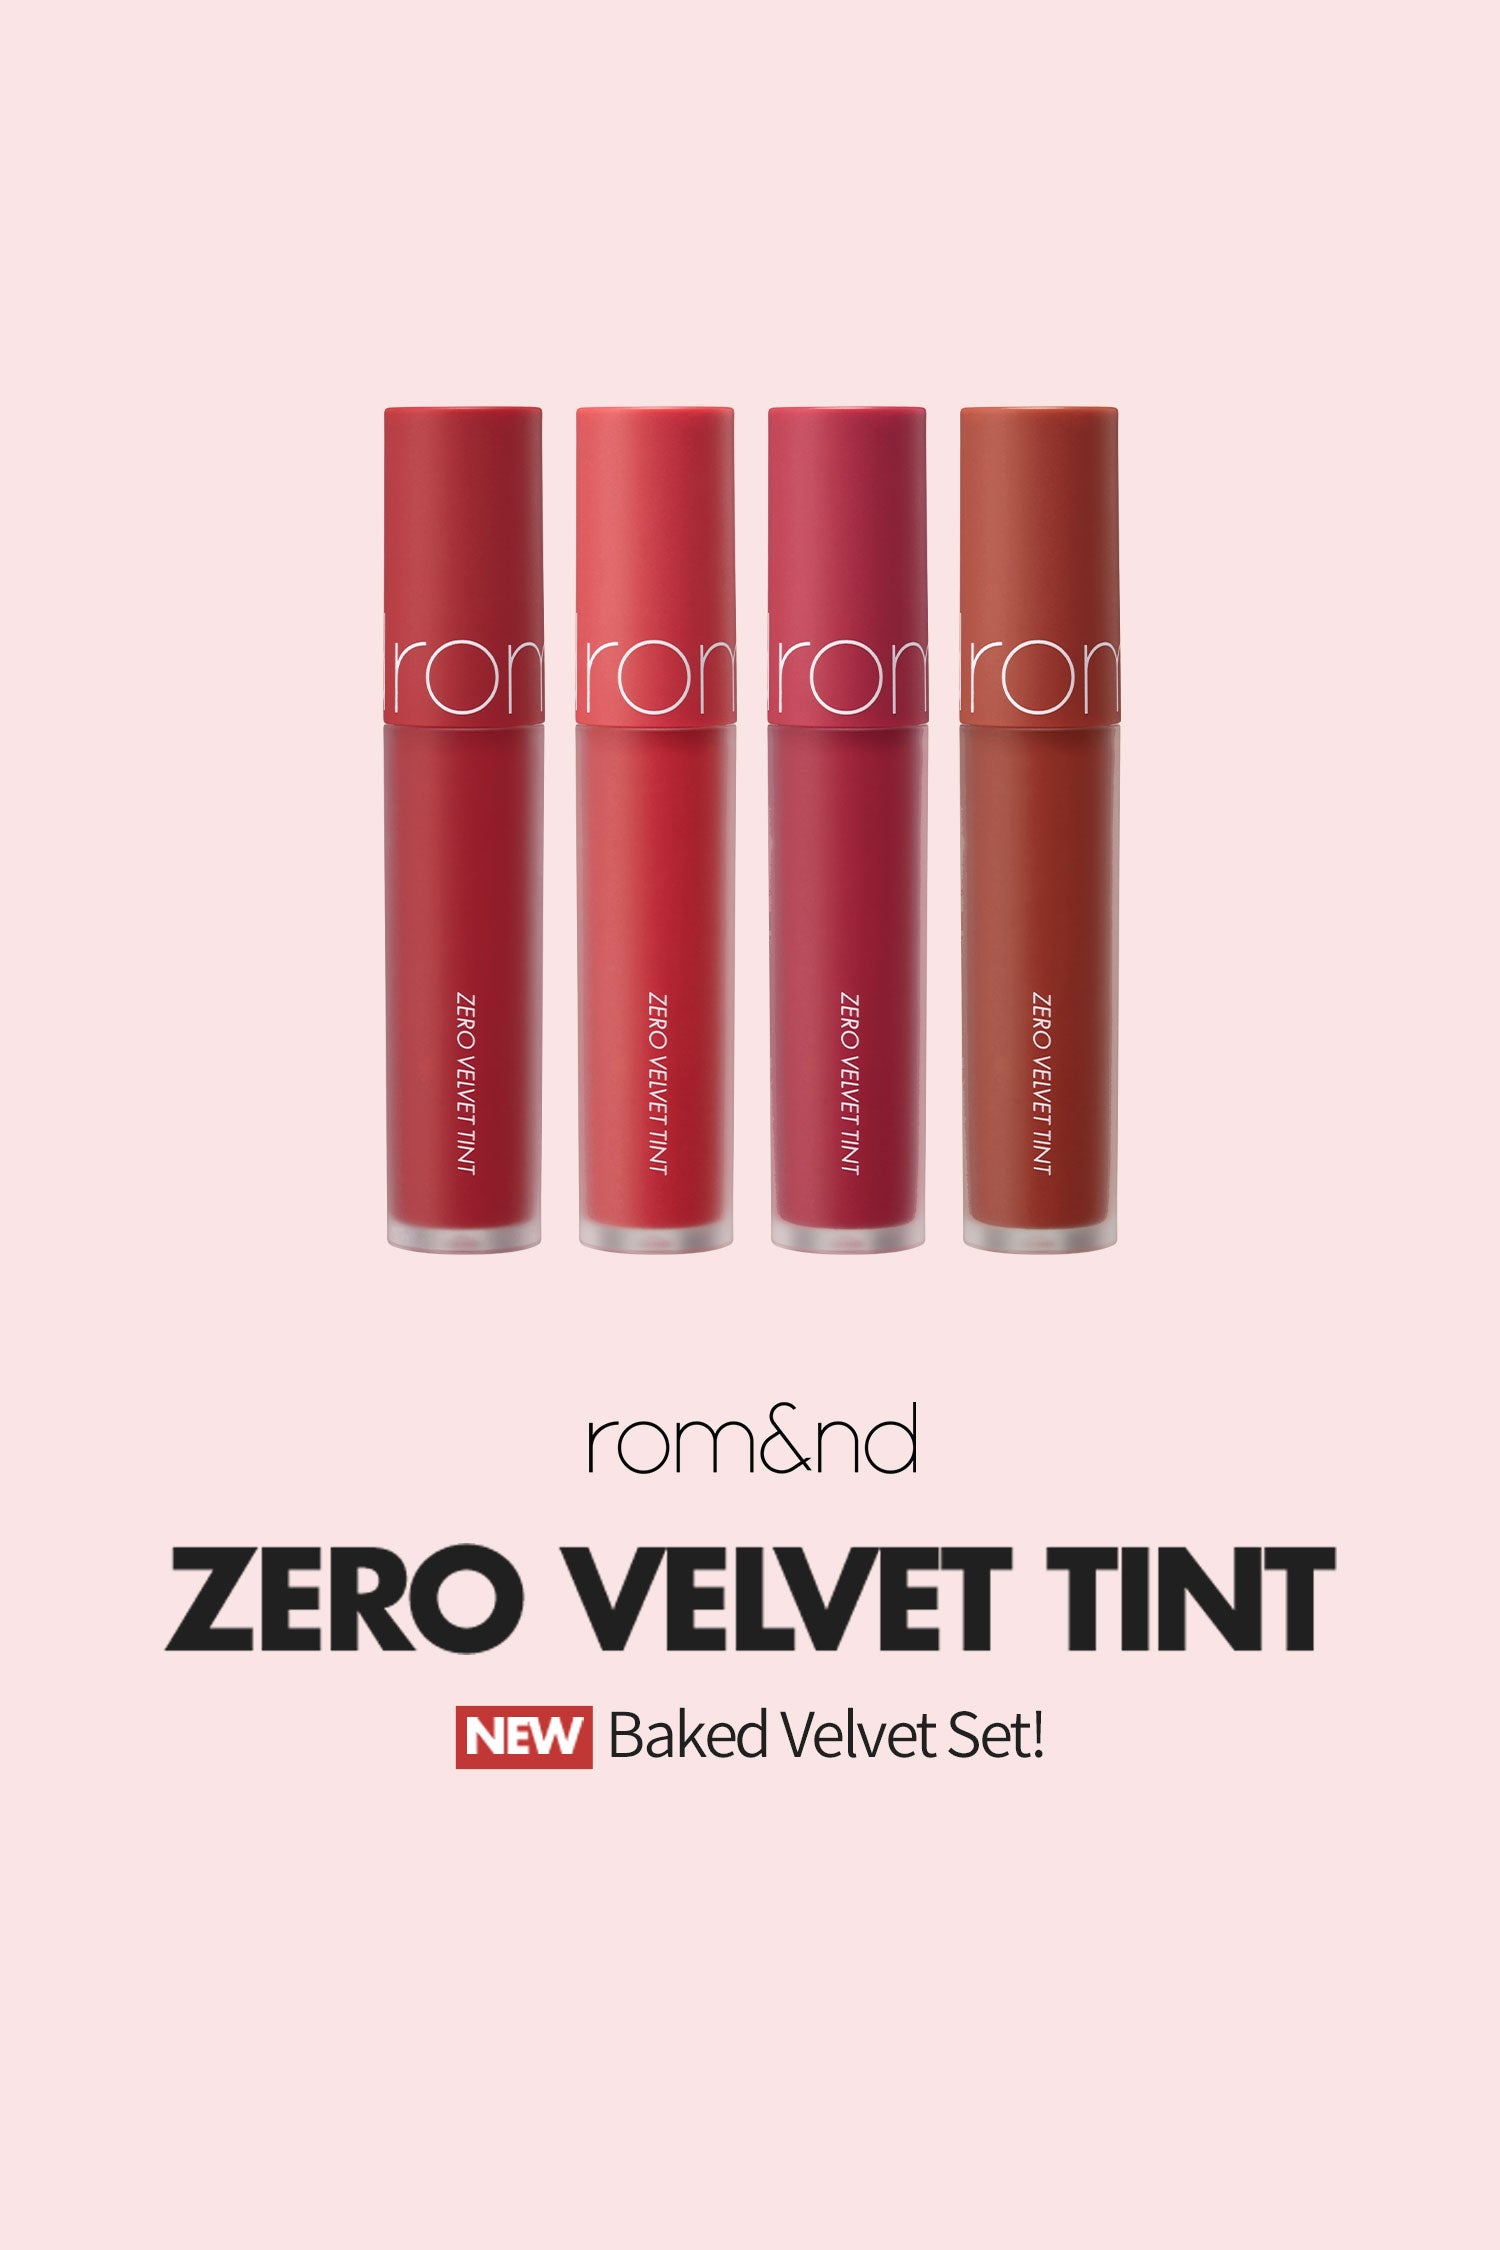 rom&nd Zero Velvet Tint Velvet Winery Edition